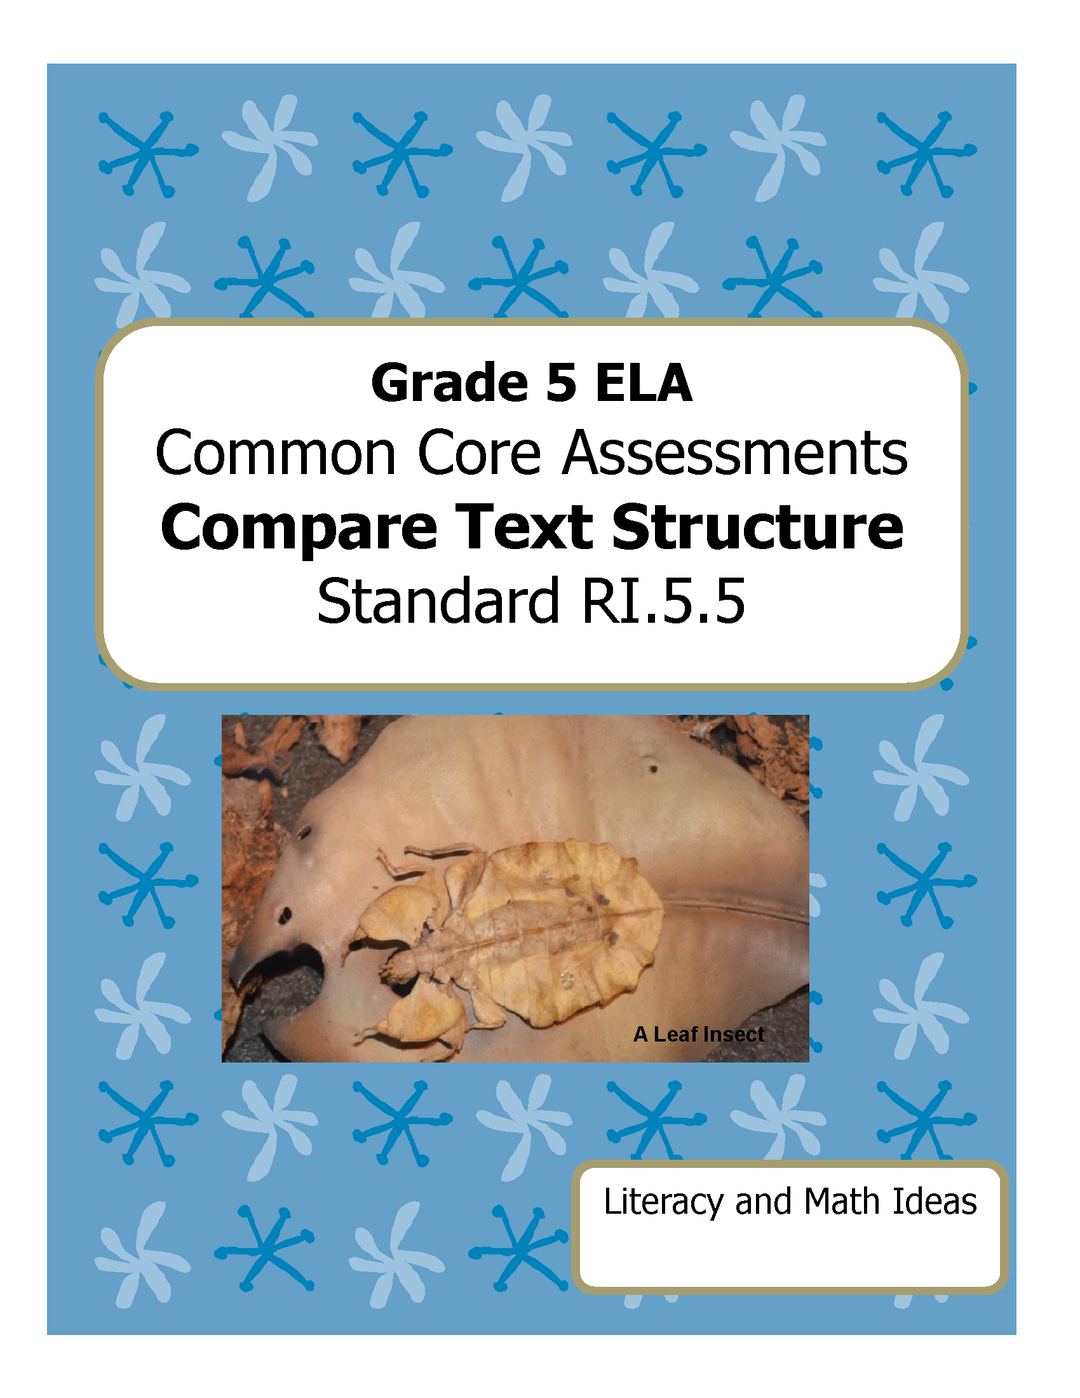 Grade 5 Common Core Assessments: Compare Text Structure RI.5.5